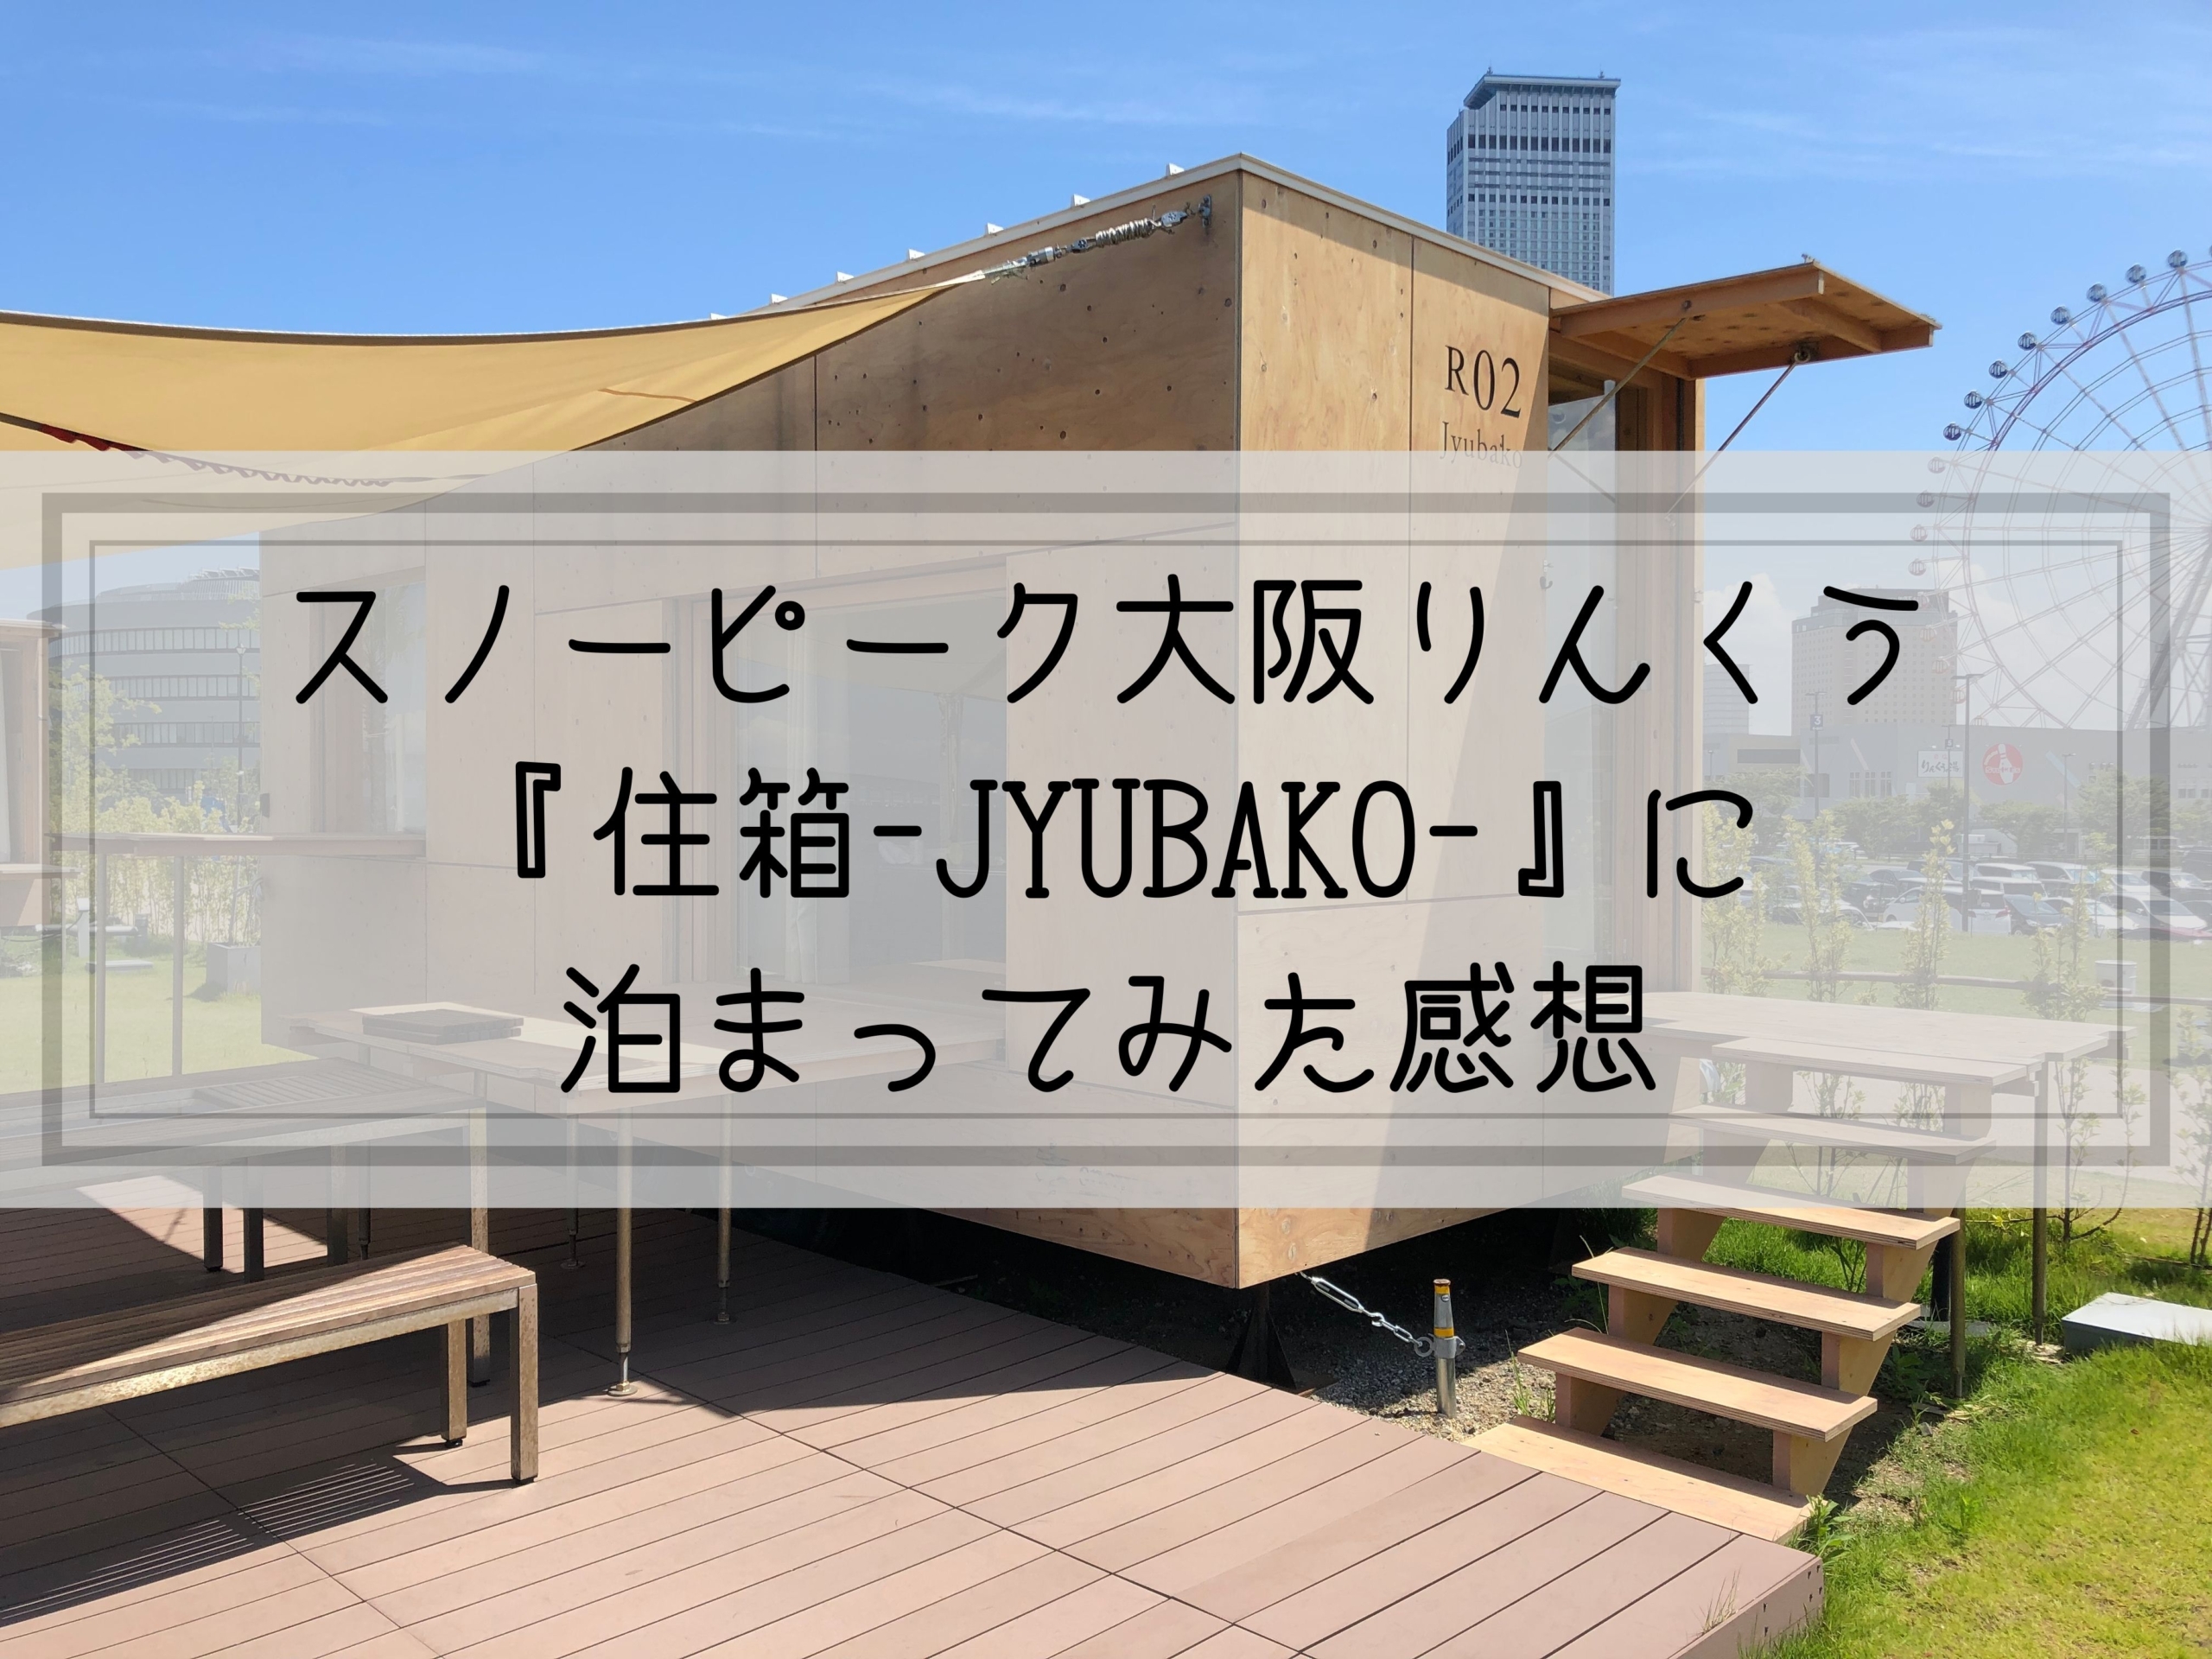 【グランピング】 スノーピーク大阪りんくう『住箱-JYUBAKO-』に泊まってみた感想